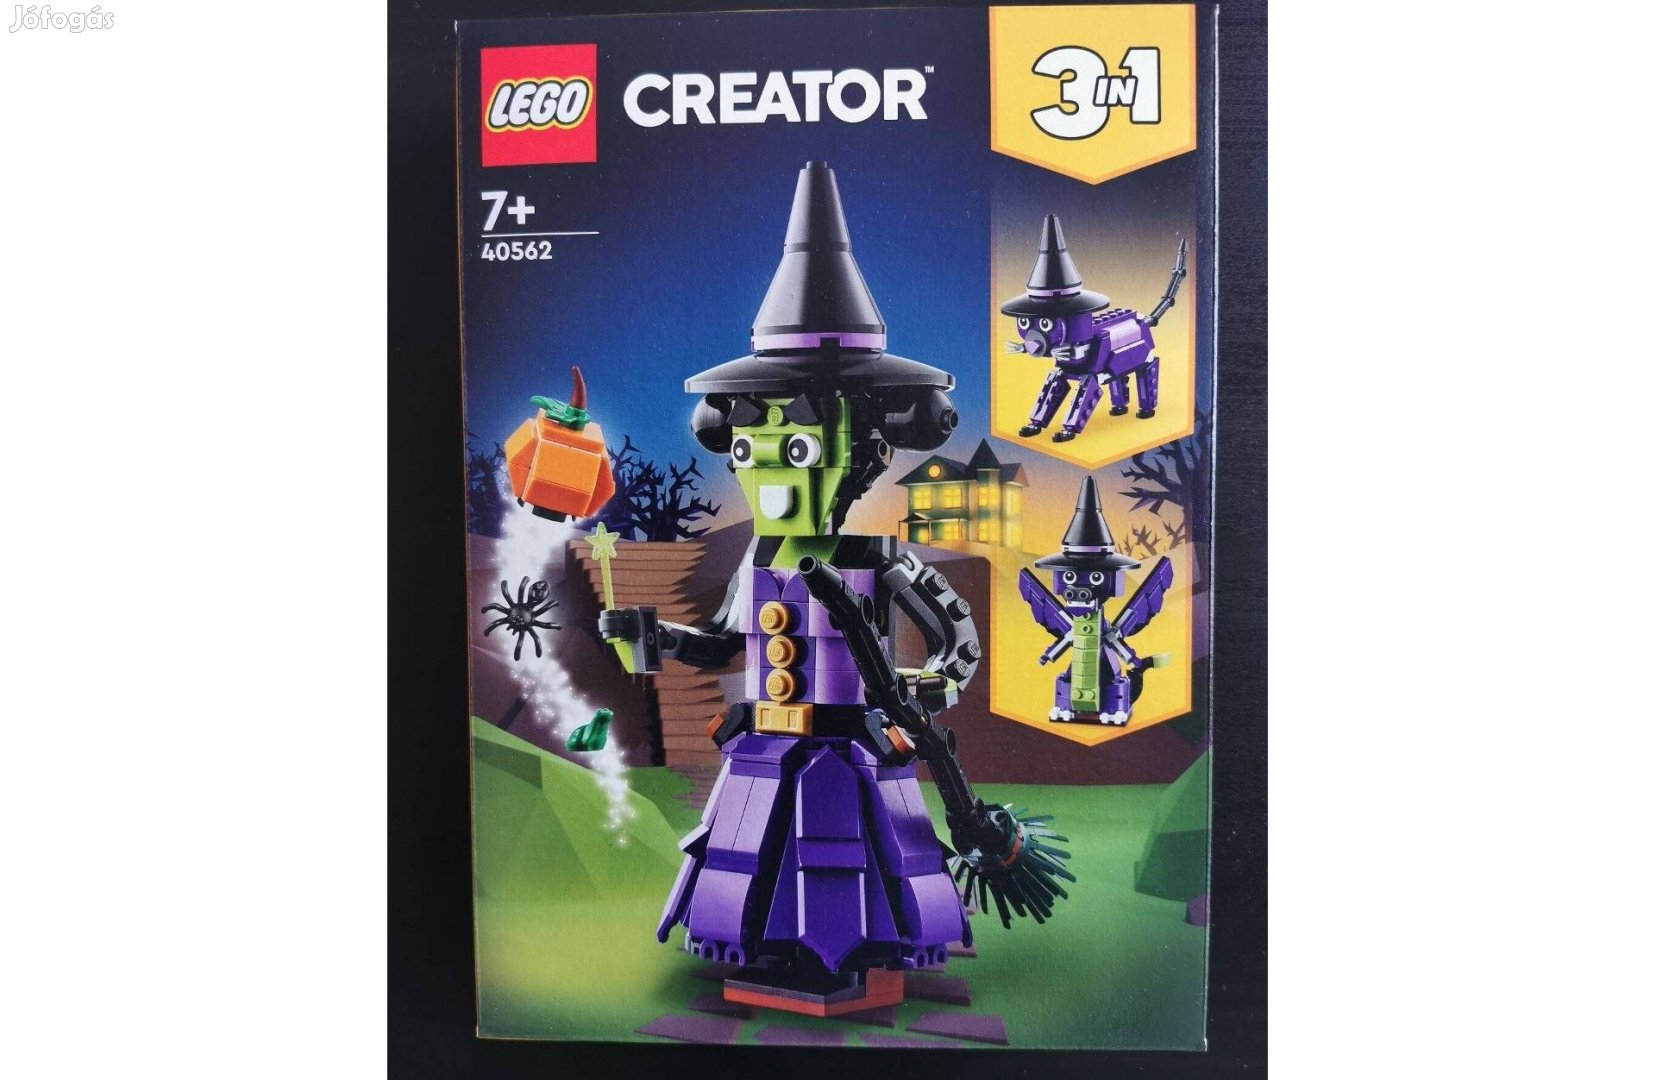 LEGO Creator 3-in-1 - Misztikus boszorkány (40562)